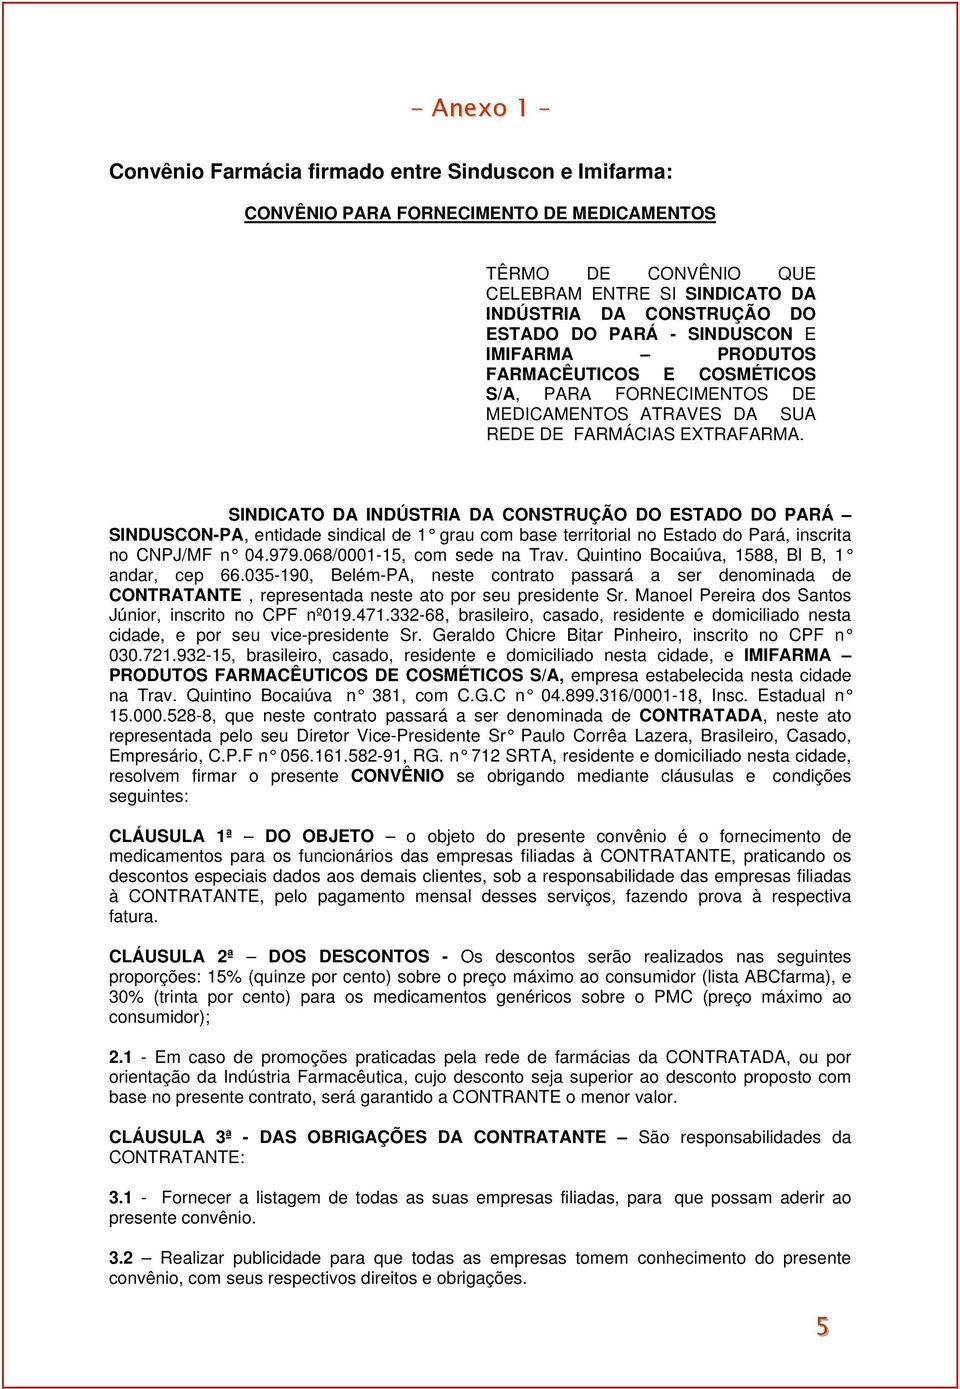 SINDICATO DA INDÚSTRIA DA CONSTRUÇÃO DO ESTADO DO PARÁ SINDUSCON-PA, entidade sindical de 1 grau com base territorial no Estado do Pará, inscrita no CNPJ/MF n 04.979.068/0001-15, com sede na Trav.